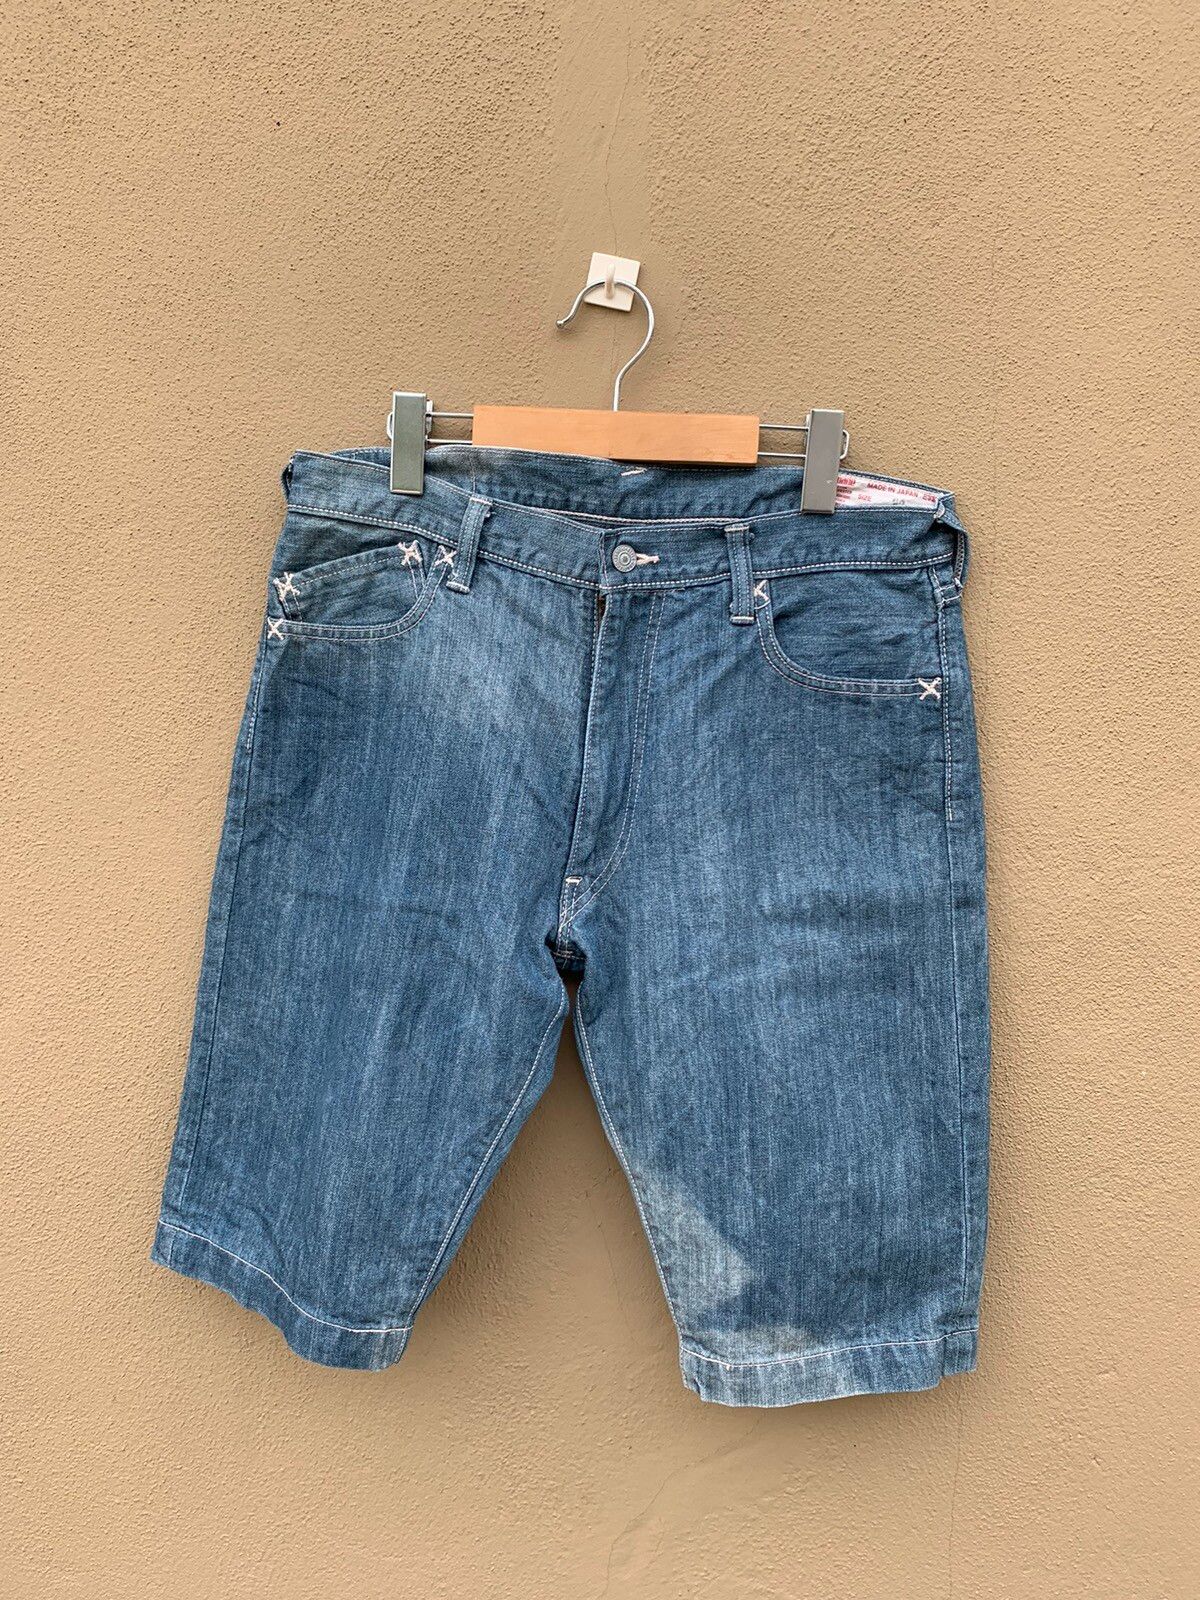 Vintage Lot 2005 Evisu Yamane Short Jeans Made In Japan - 5